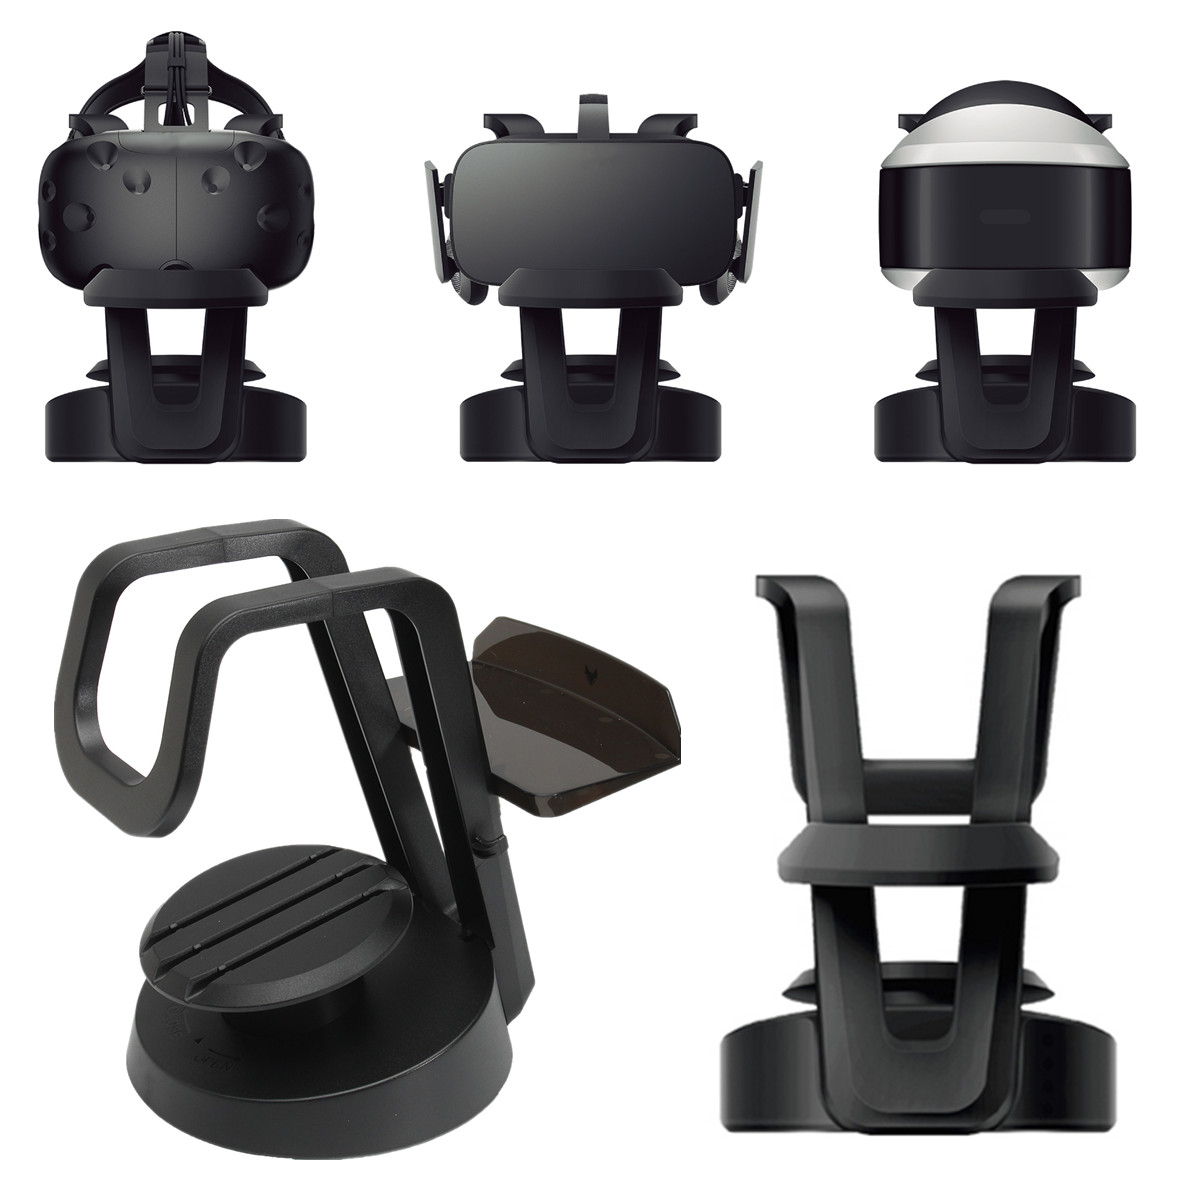 

Universal VR Headset Stand Monut Holder Storage Organizer for VR Glasses VIVE Oculus Rift CV1 DK2